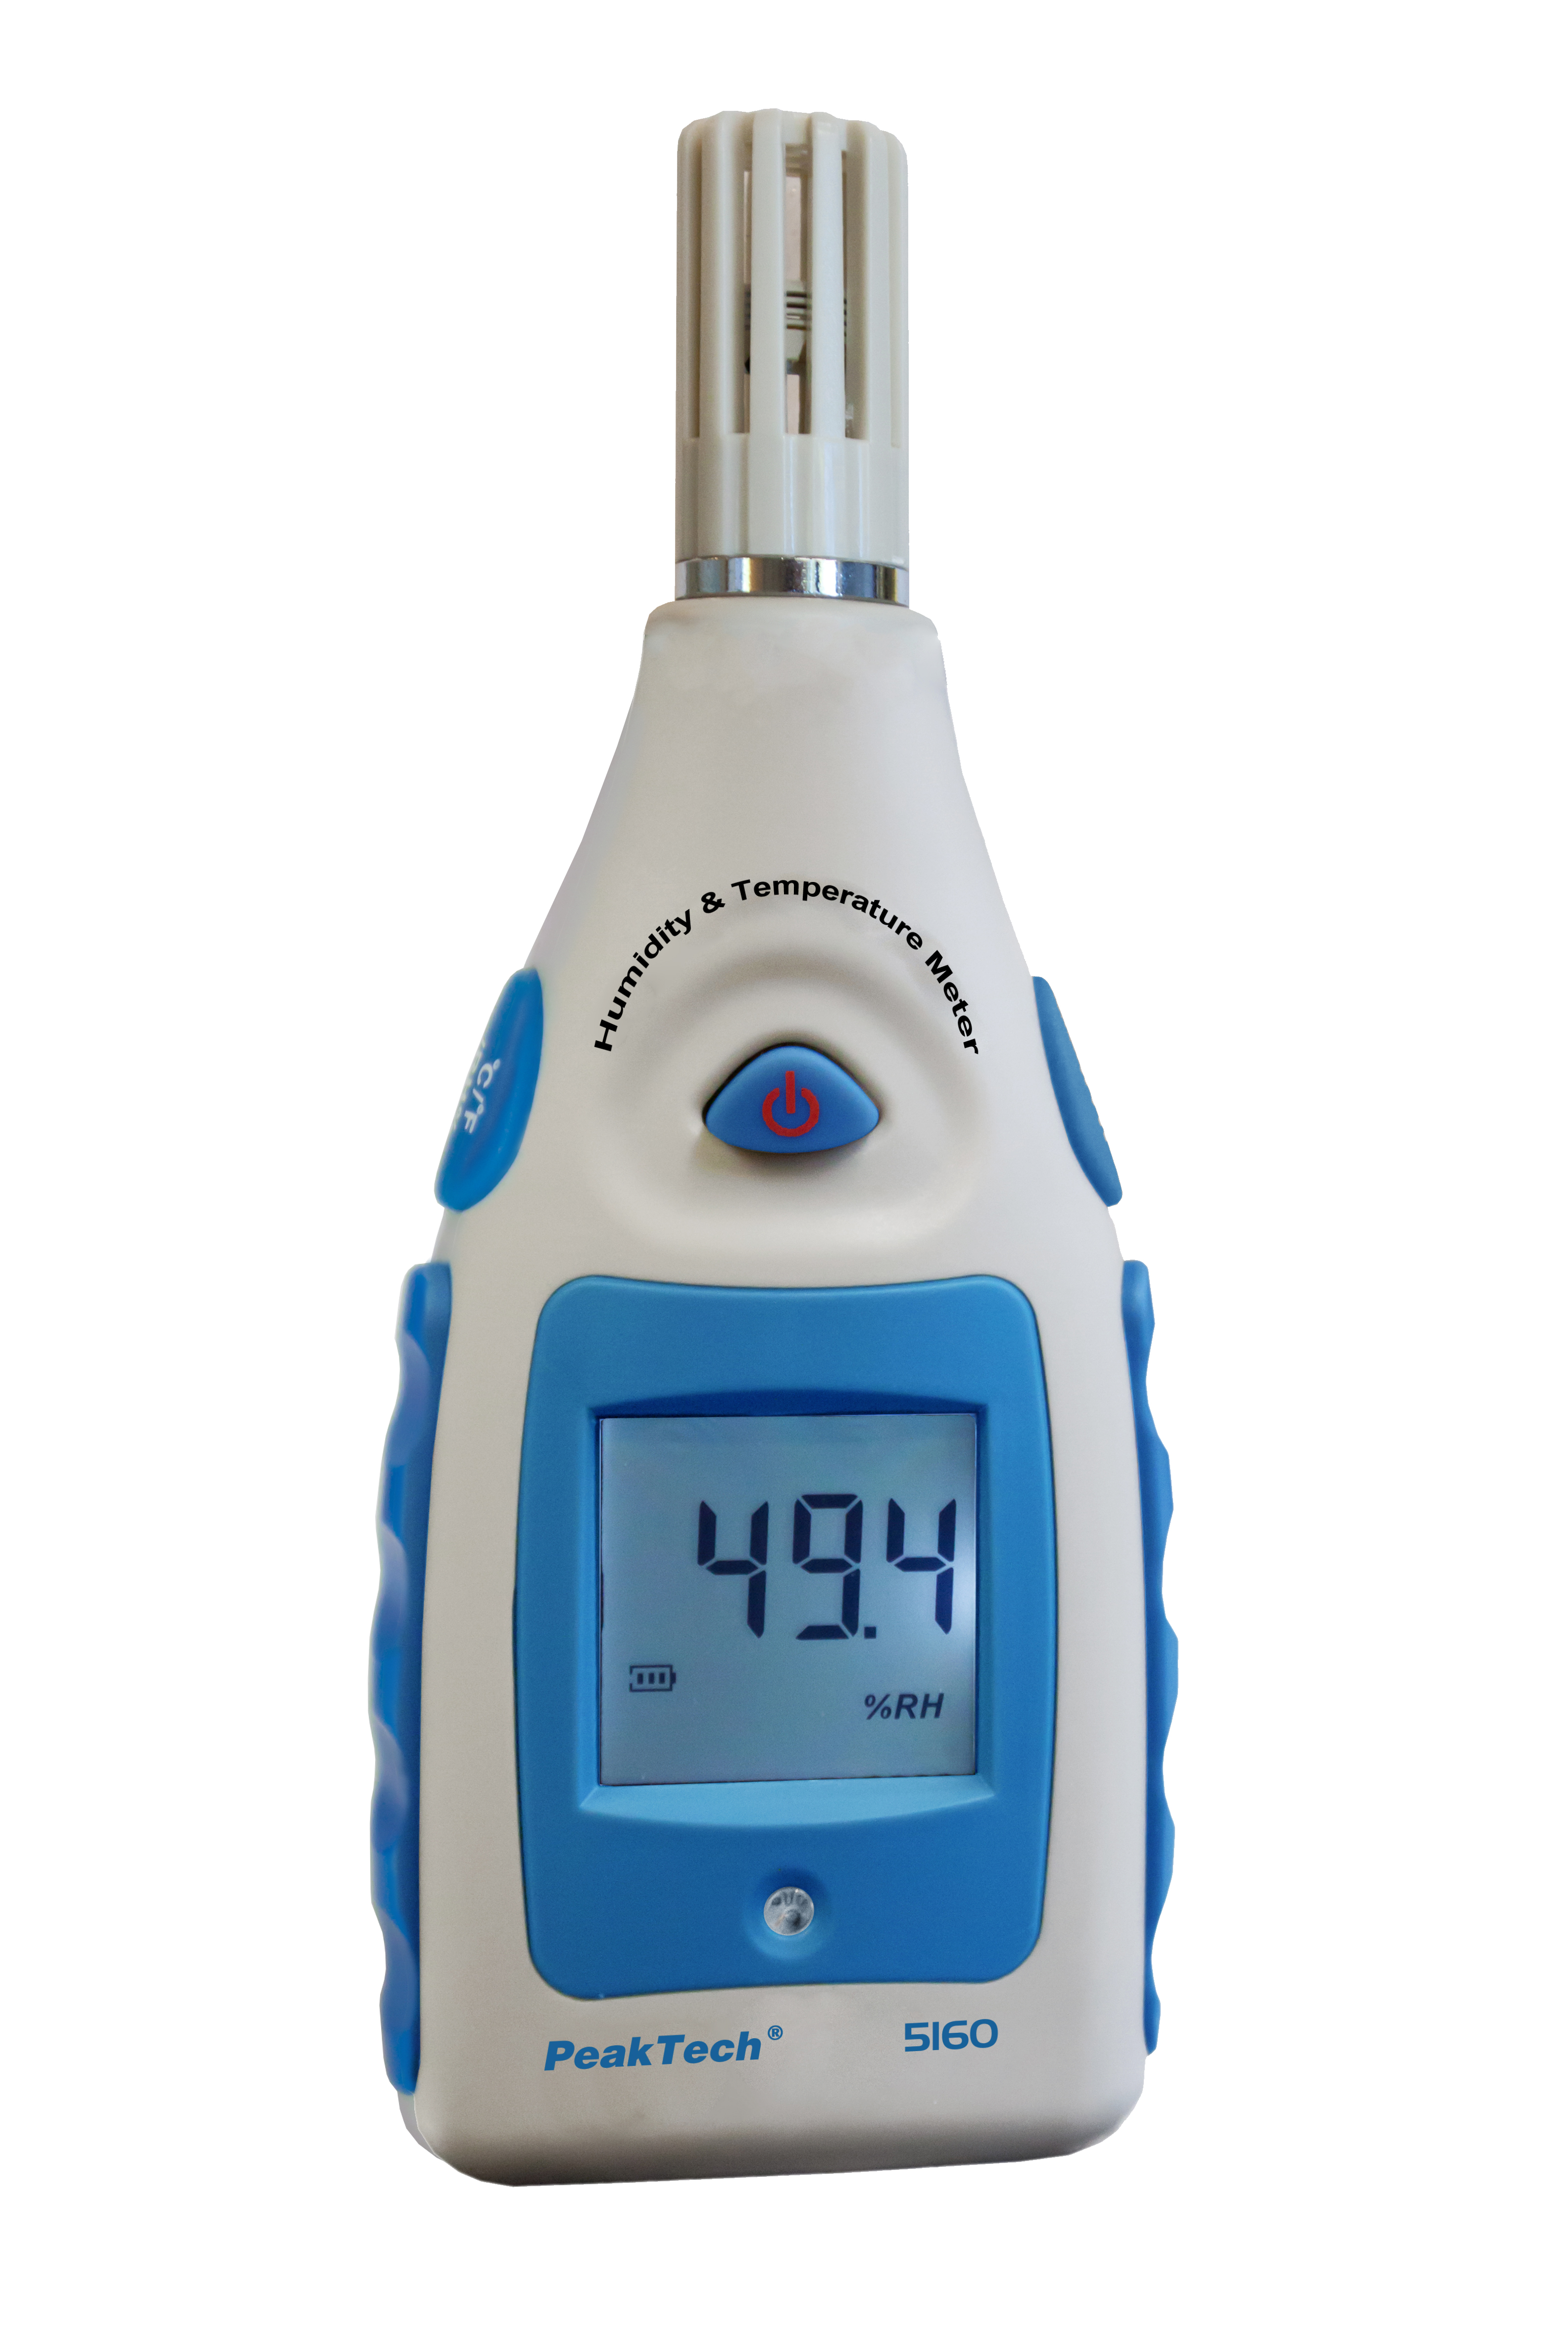 «PeakTech® P 5160» Temperature-/Humidity Meter